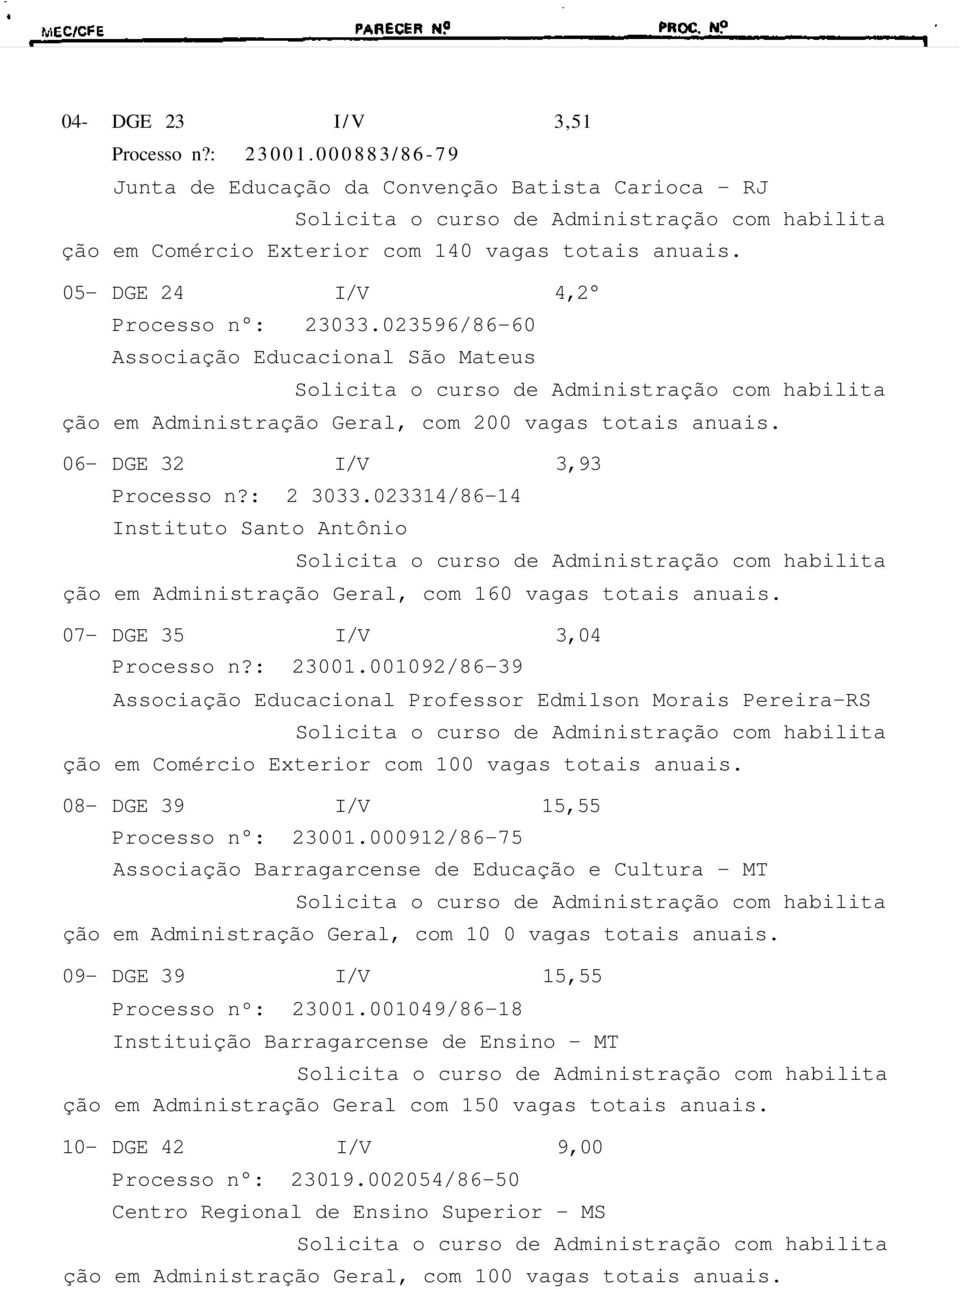 023314/86-14 Instituto Santo Antônio ção em Administração Geral, com 160 vagas totais anuais. 07- DGE 35 I/V 3,04 Processo n?: 23001.